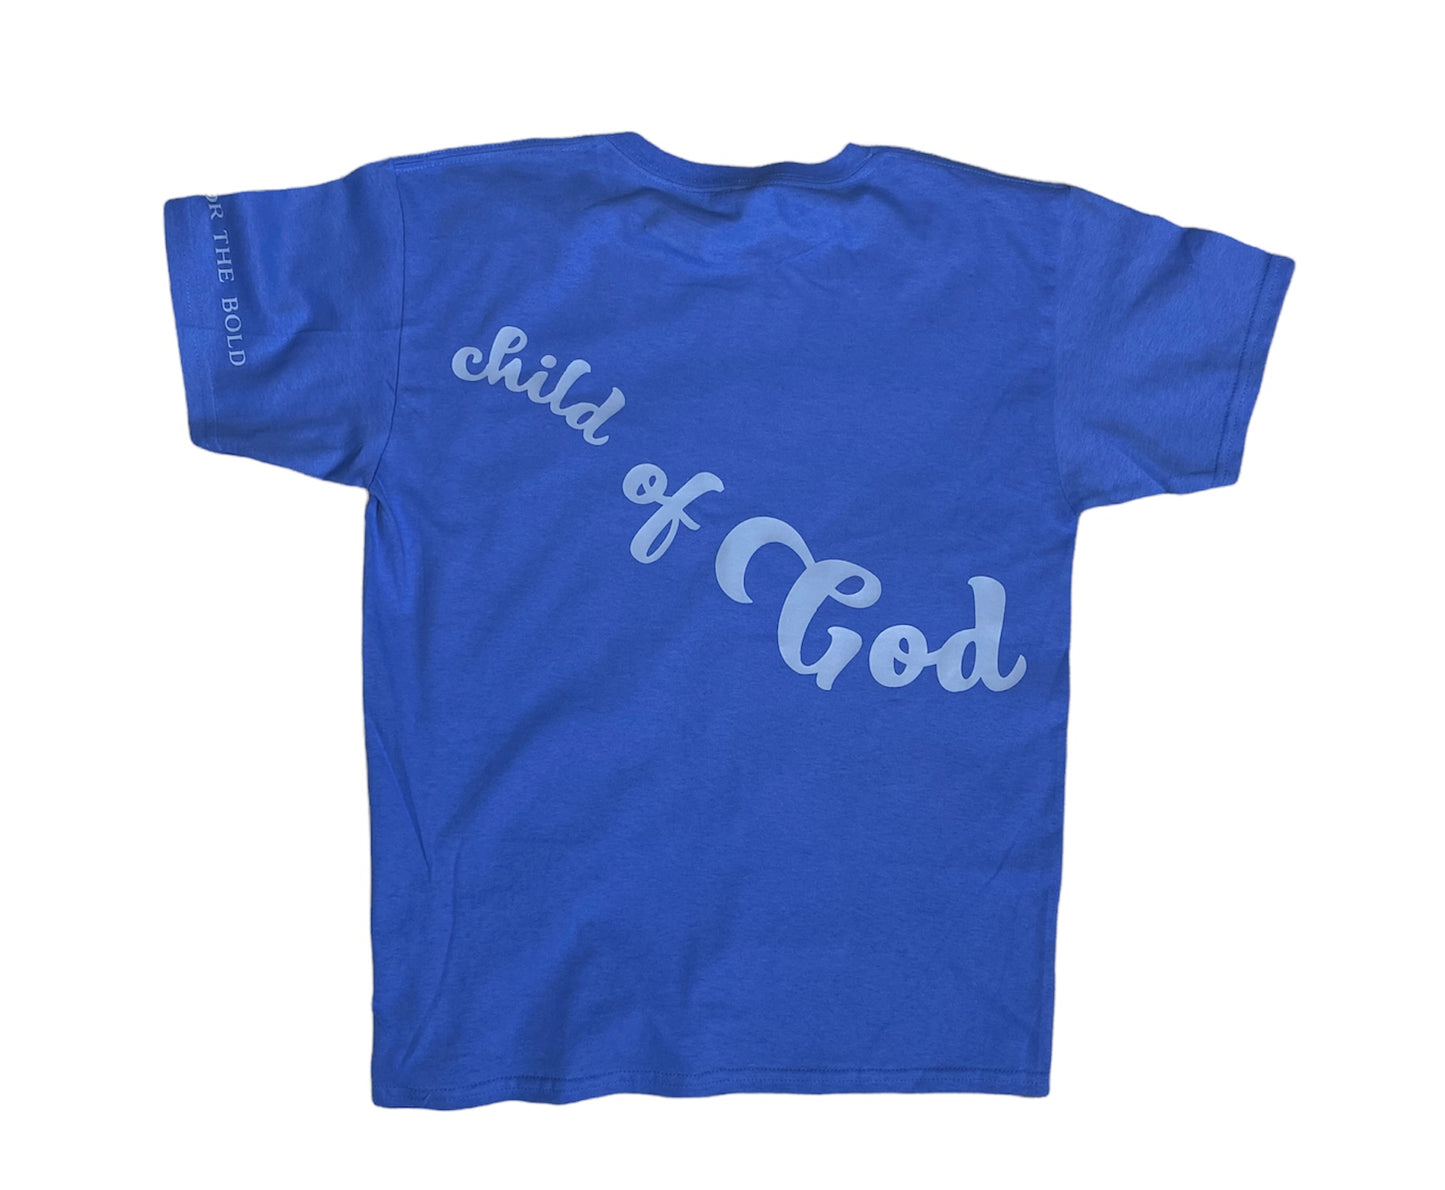 Child of God - Boys